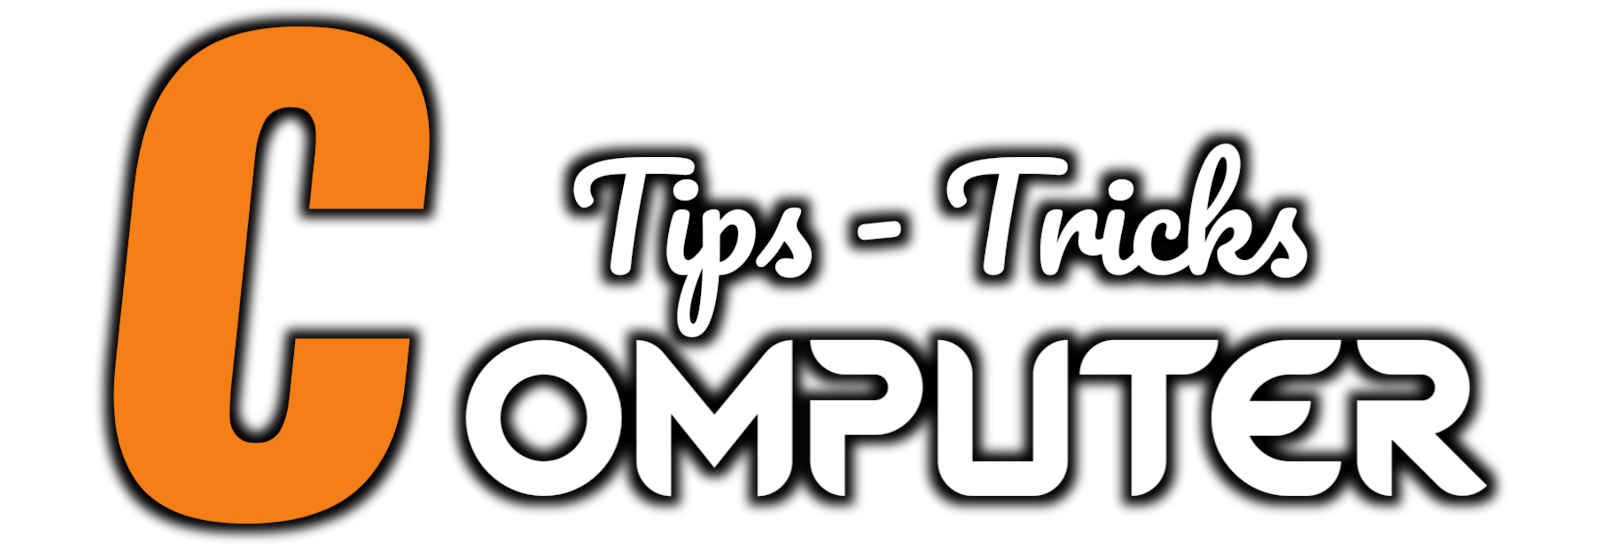 Computer Tips Tricks.tech